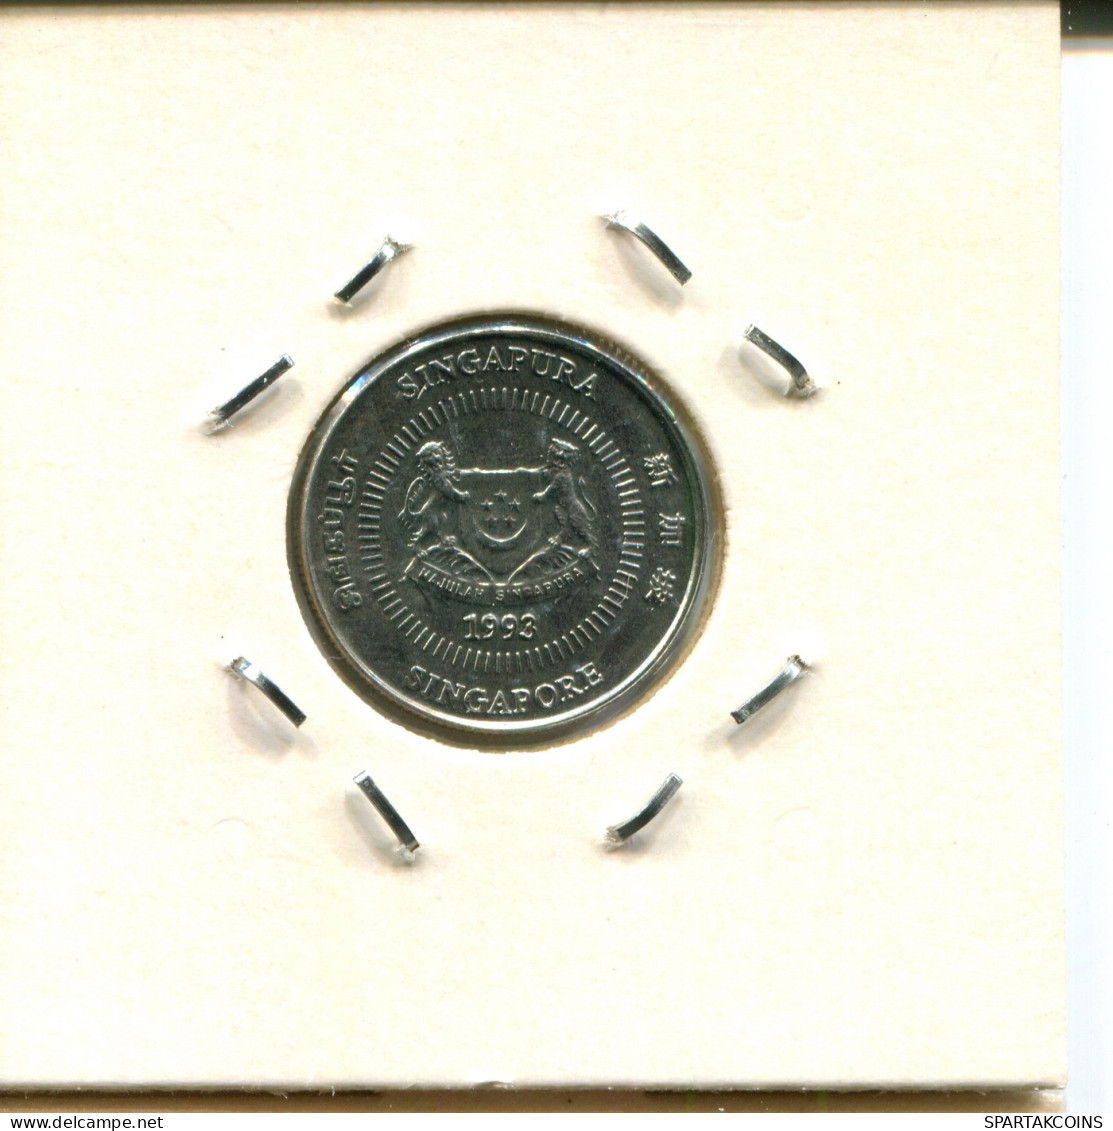 10 CENTS 1993 SINGAPUR SINGAPORE Moneda #AX136.E - Singapour